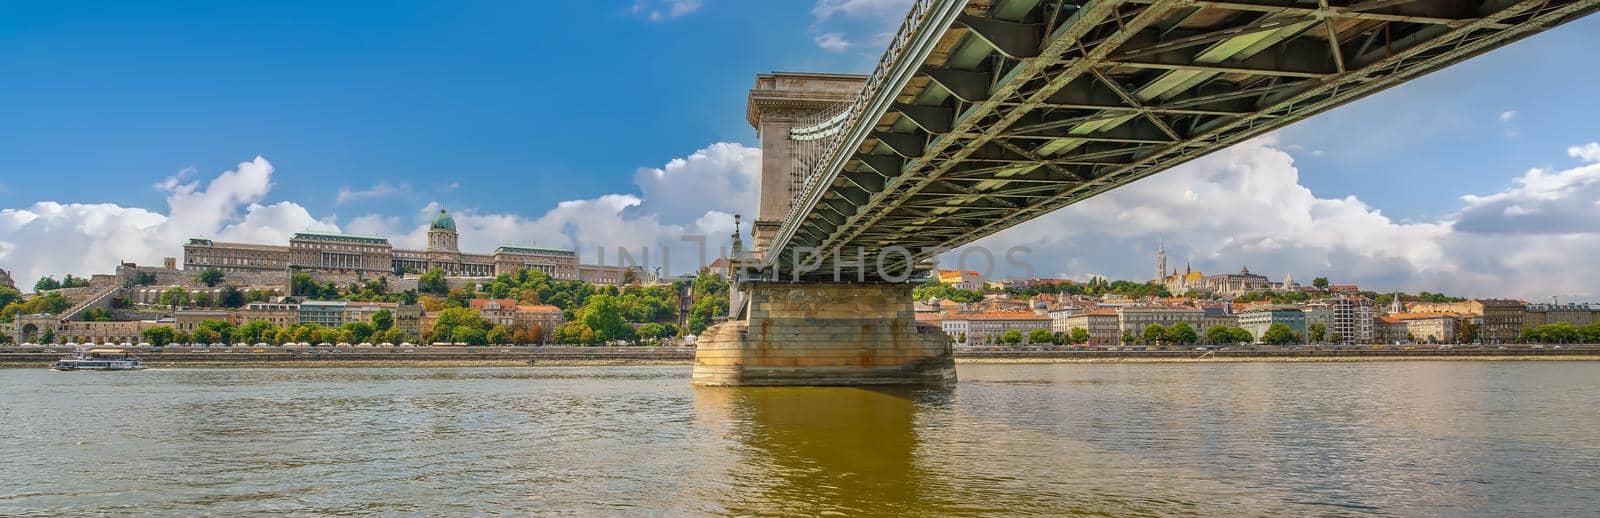 Budapest city skyline, cityscape of Hungary  by f11photo